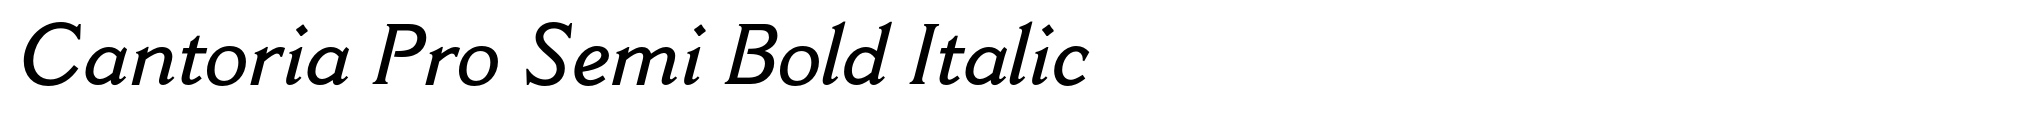 Cantoria Pro Semi Bold Italic image